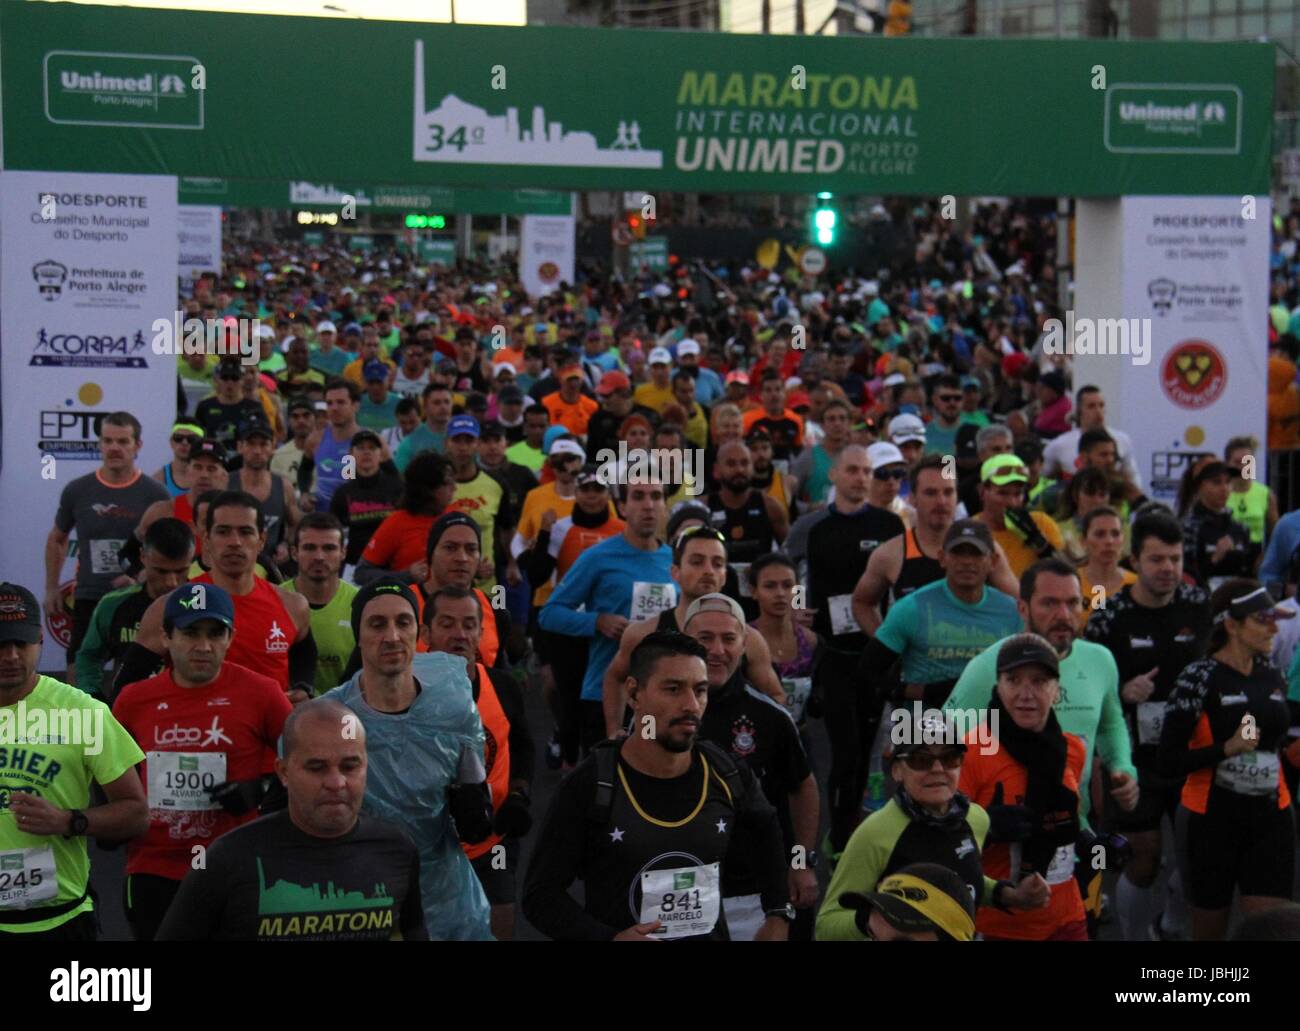 Porto Alegre, Brazil. 11th June, 2017. Start of the 34th International Marathon of Porto Alegre. Credit: Eldio Suzano/FotoArena/Alamy Live News Stock Photo